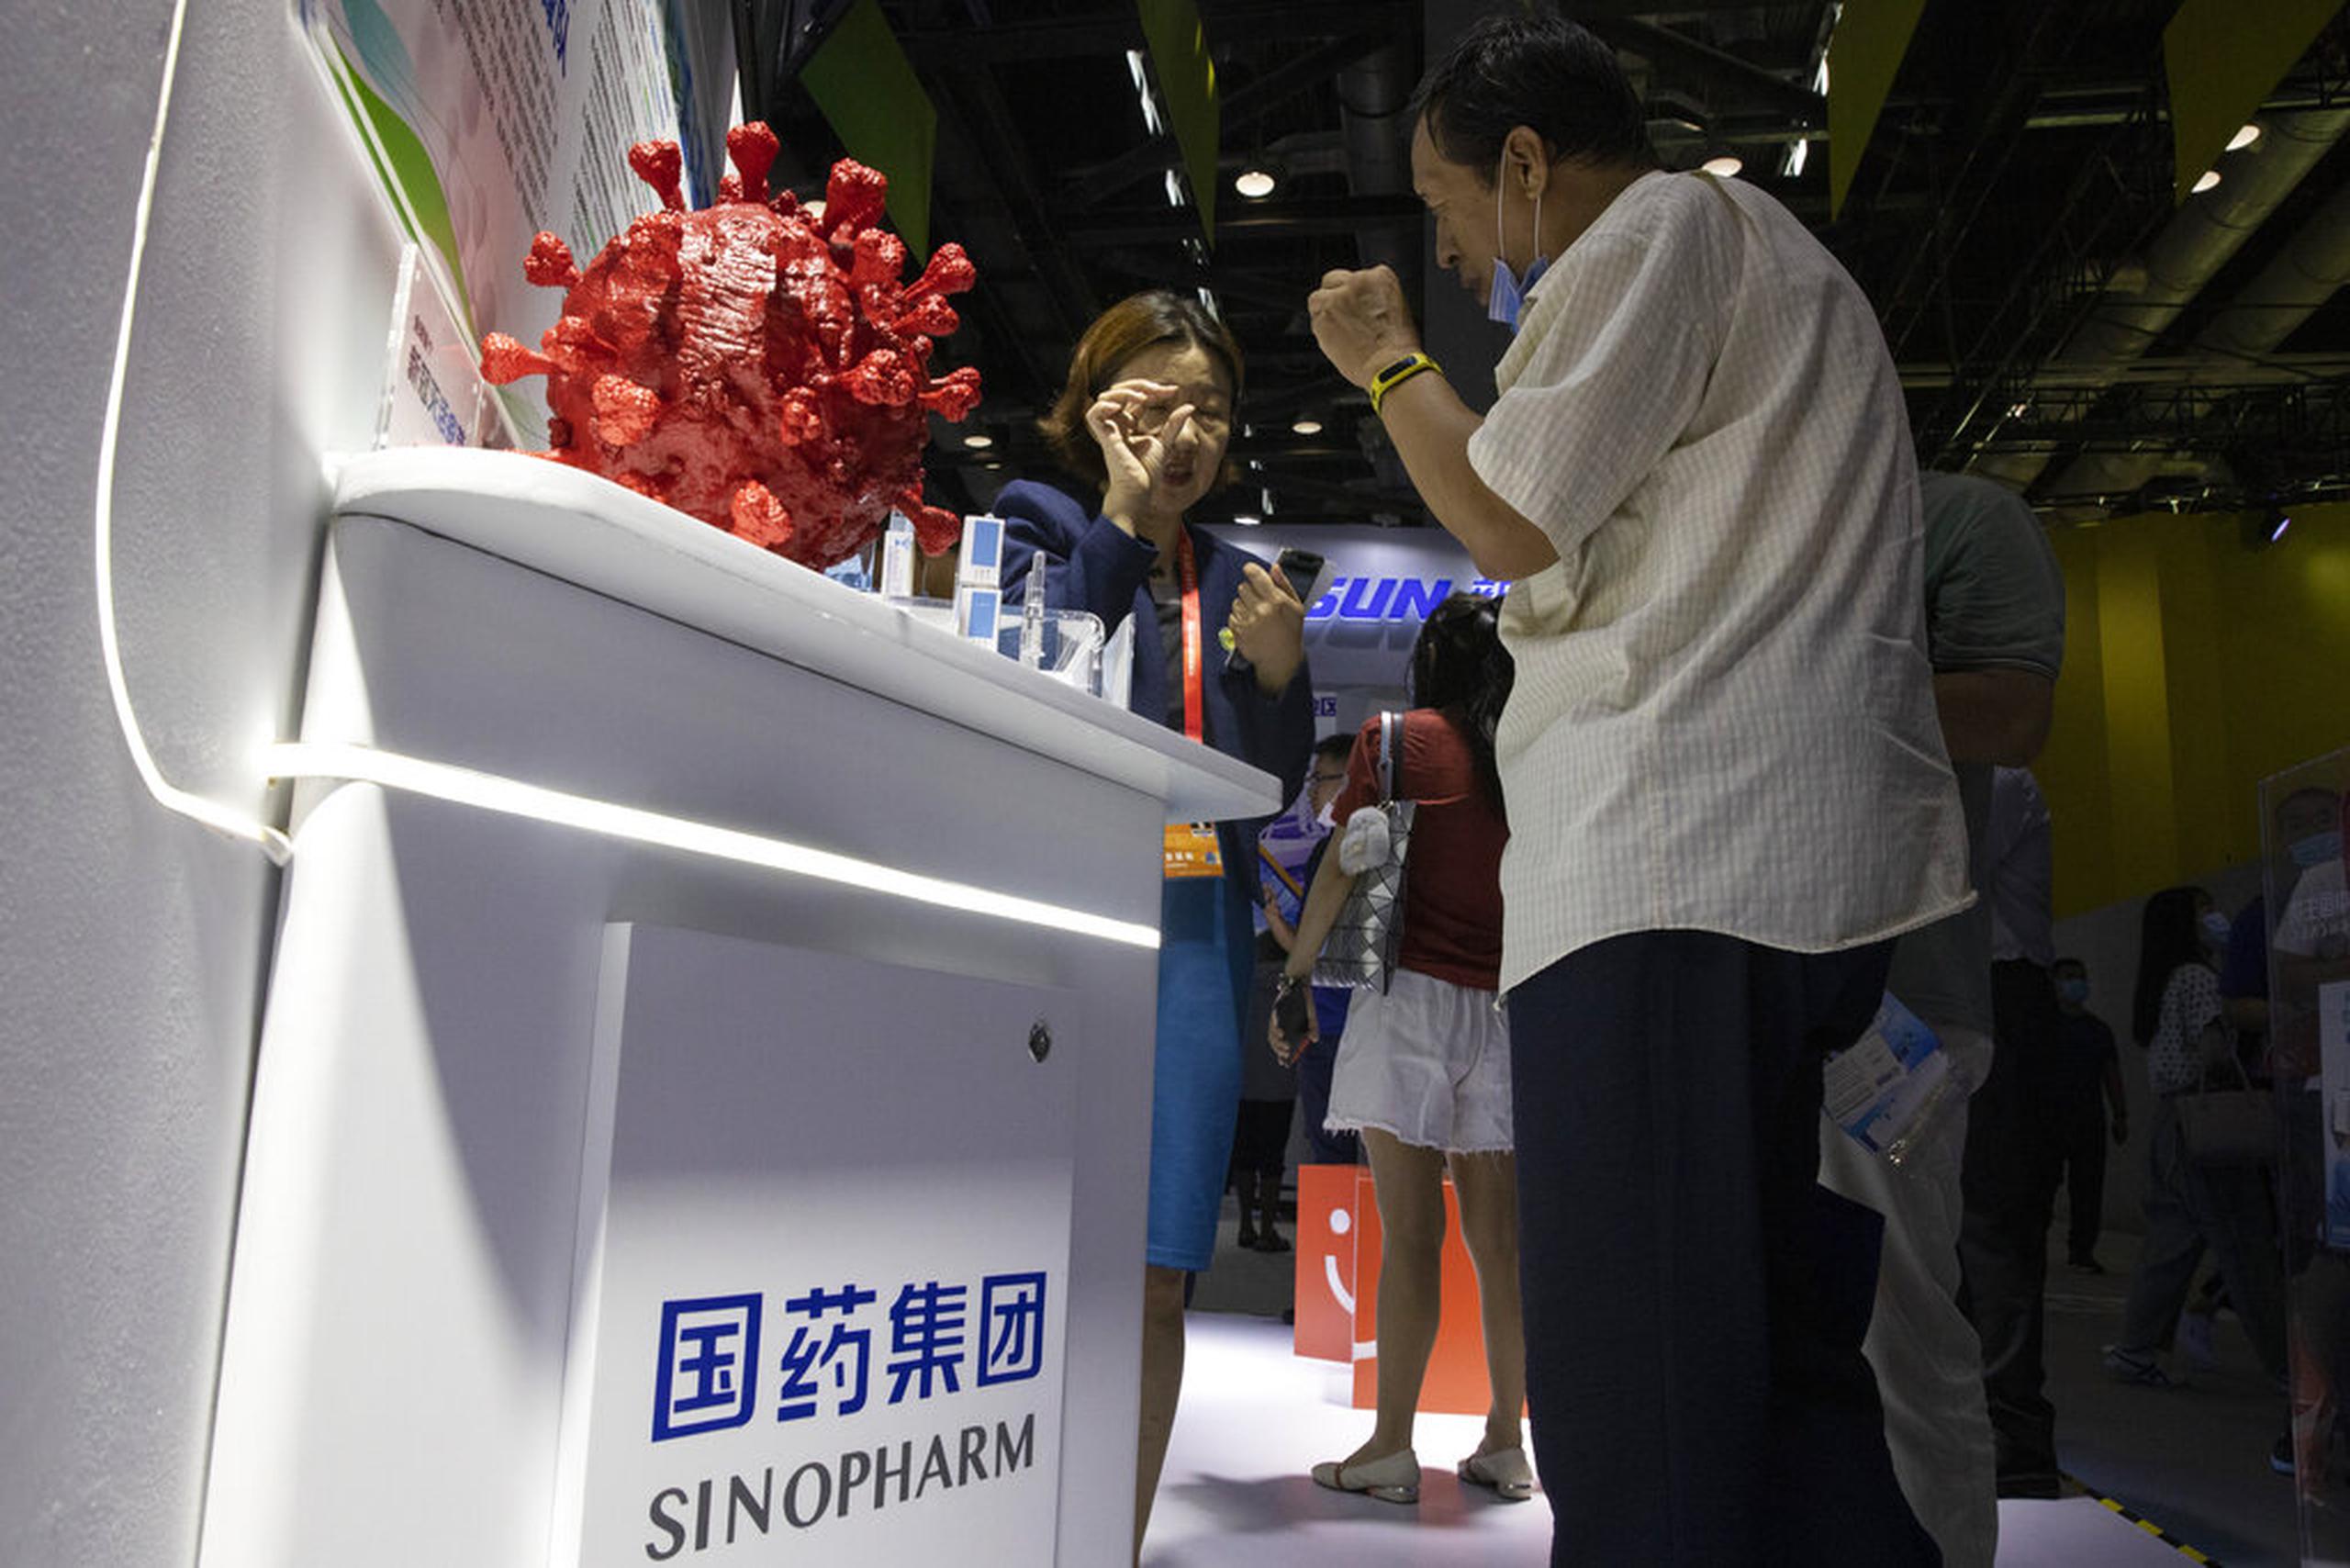 Sinopharm, propiedad del Estado, es una de al menos cinco desarrolladoras chinas que participan en la carrera global por crear vacunas contra el coronavirus.